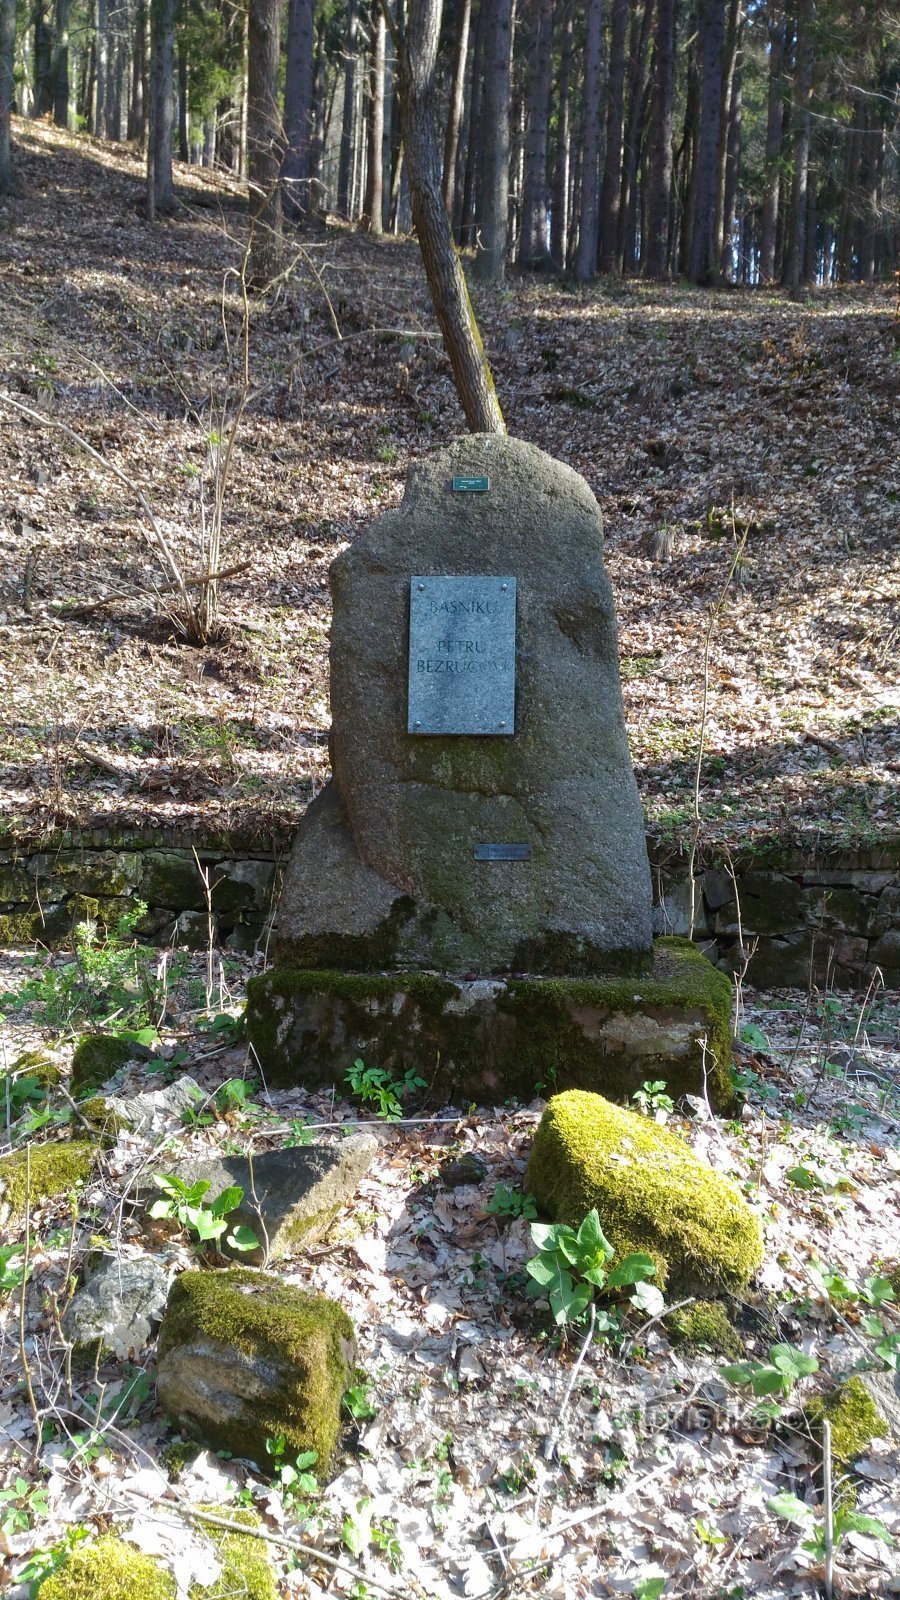 Monumentul lui Petr Bezruč în Munții Metalici.